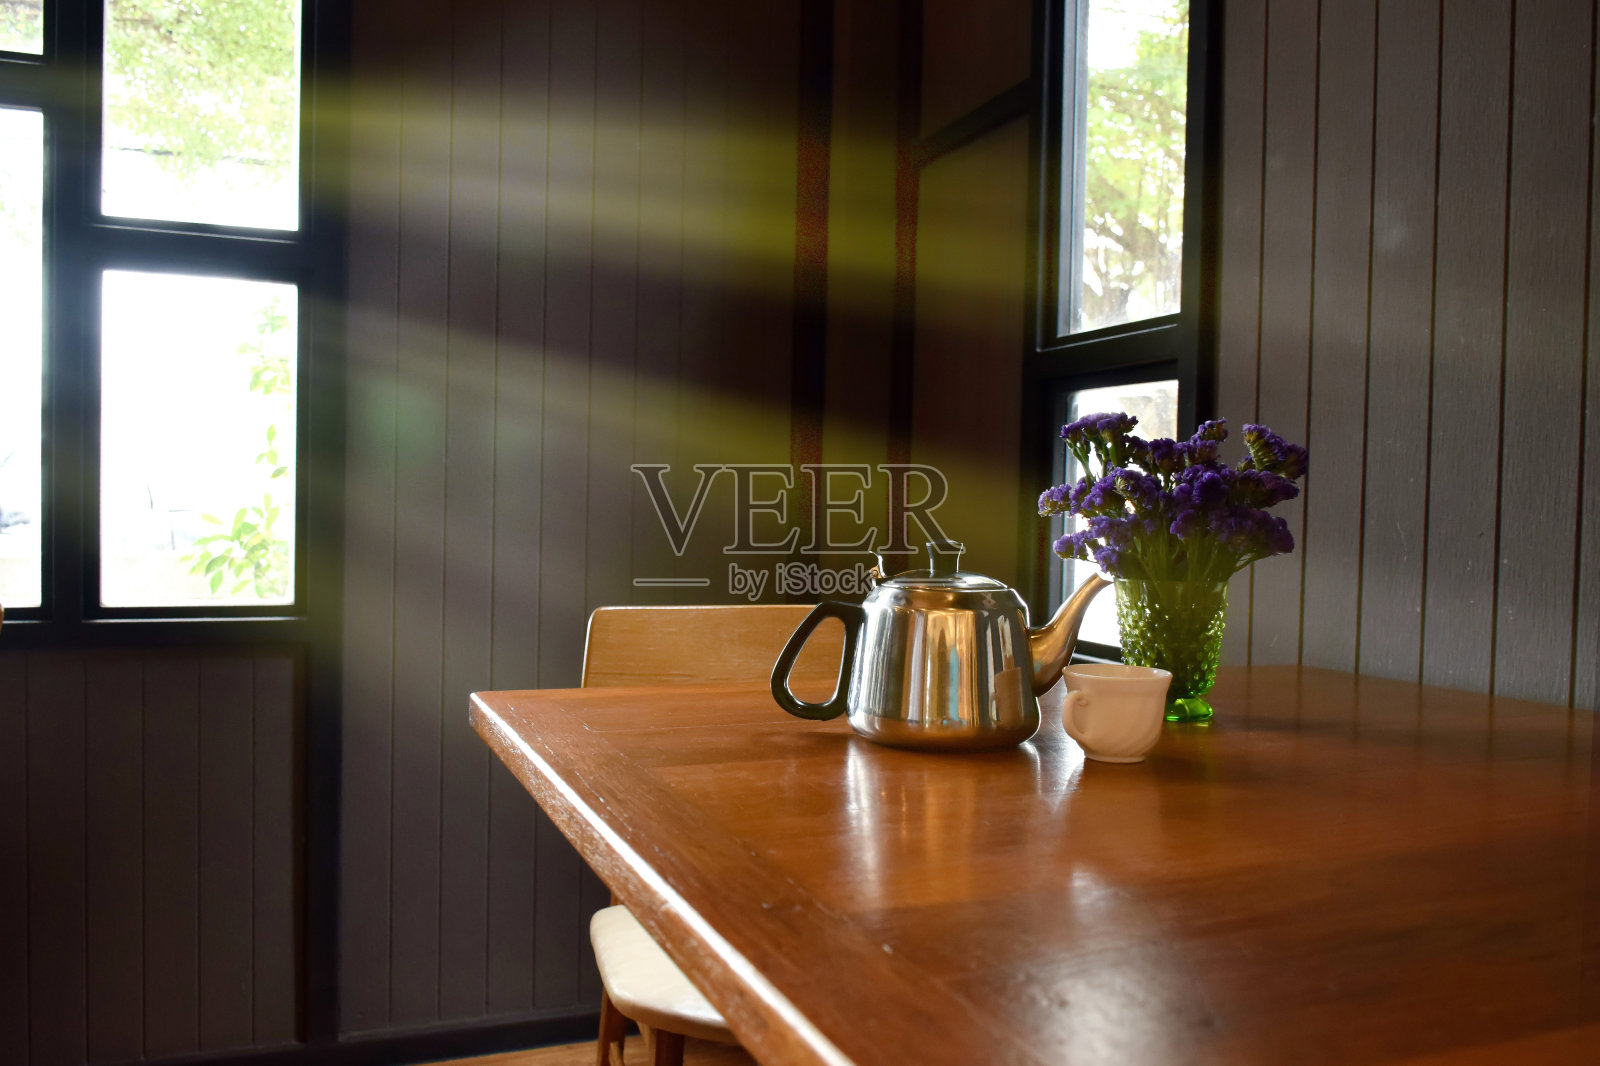 阳光透过窗户进入厨房。漂亮的木桌上放着紫色的鲜花、花瓶和茶壶。木质厨房在早晨看起来很暖和。照片摄影图片